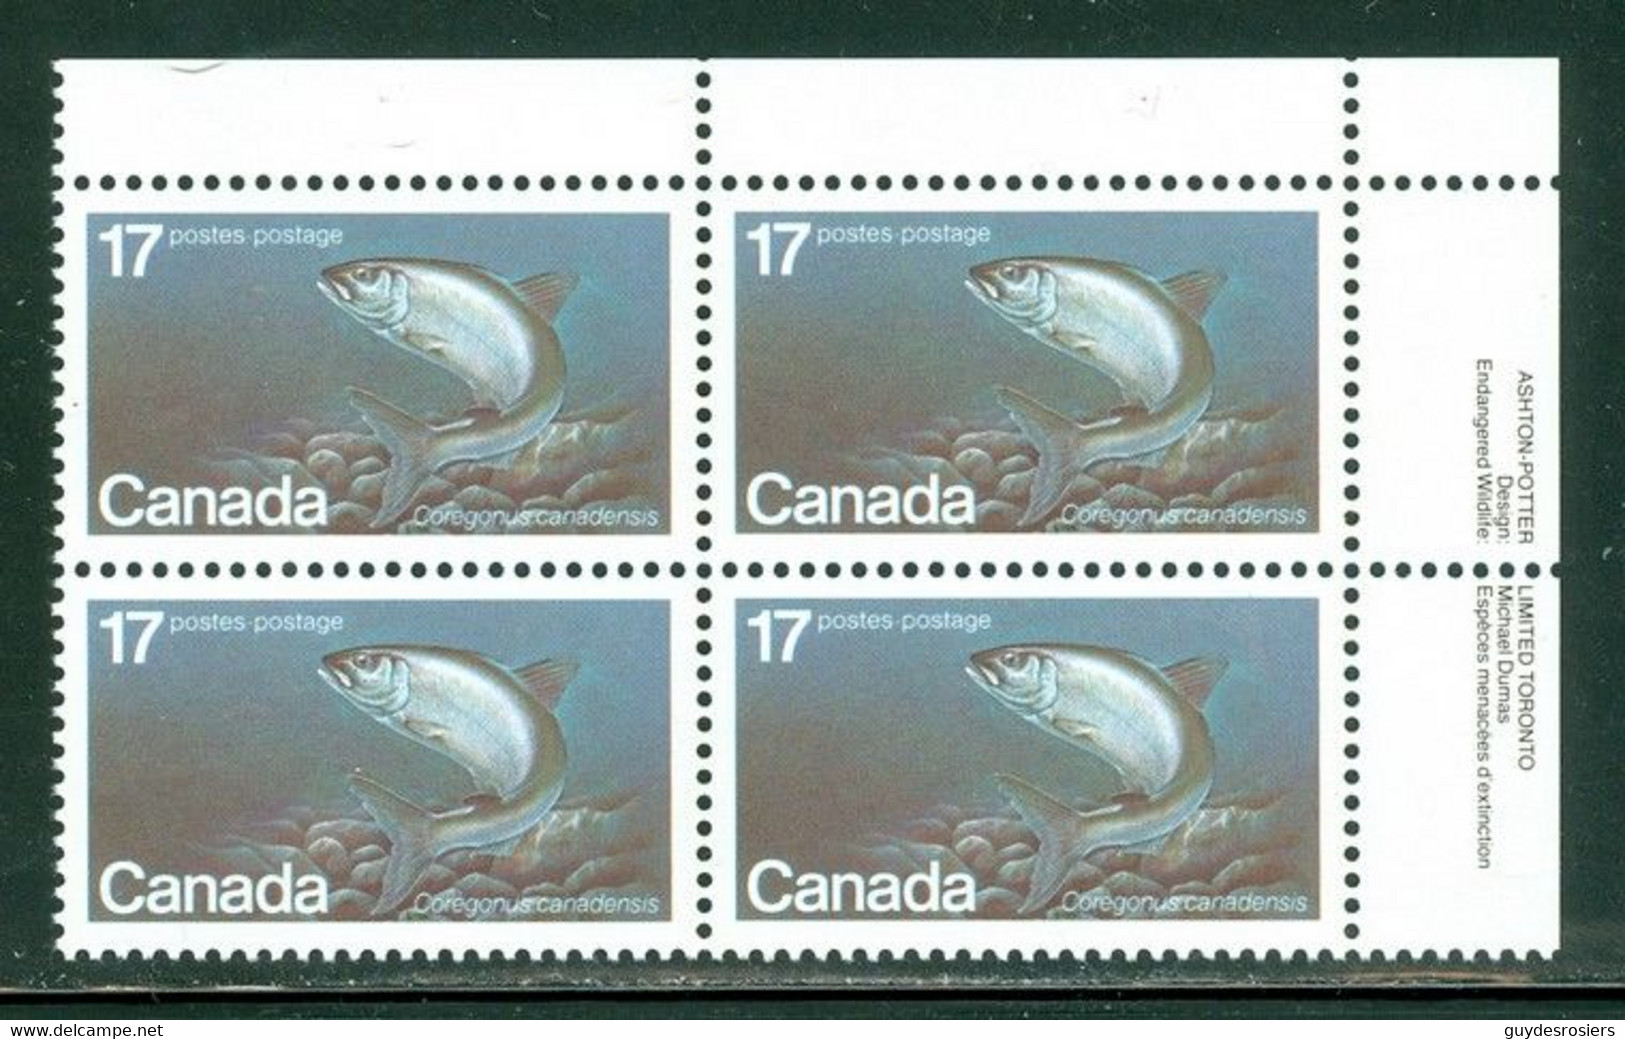 Poisson Merlan + Aiglefin / Whitefish; Timbres Scott # 853 Stamps; Bloc De Coin / Corner Block (4619) - Ungebraucht